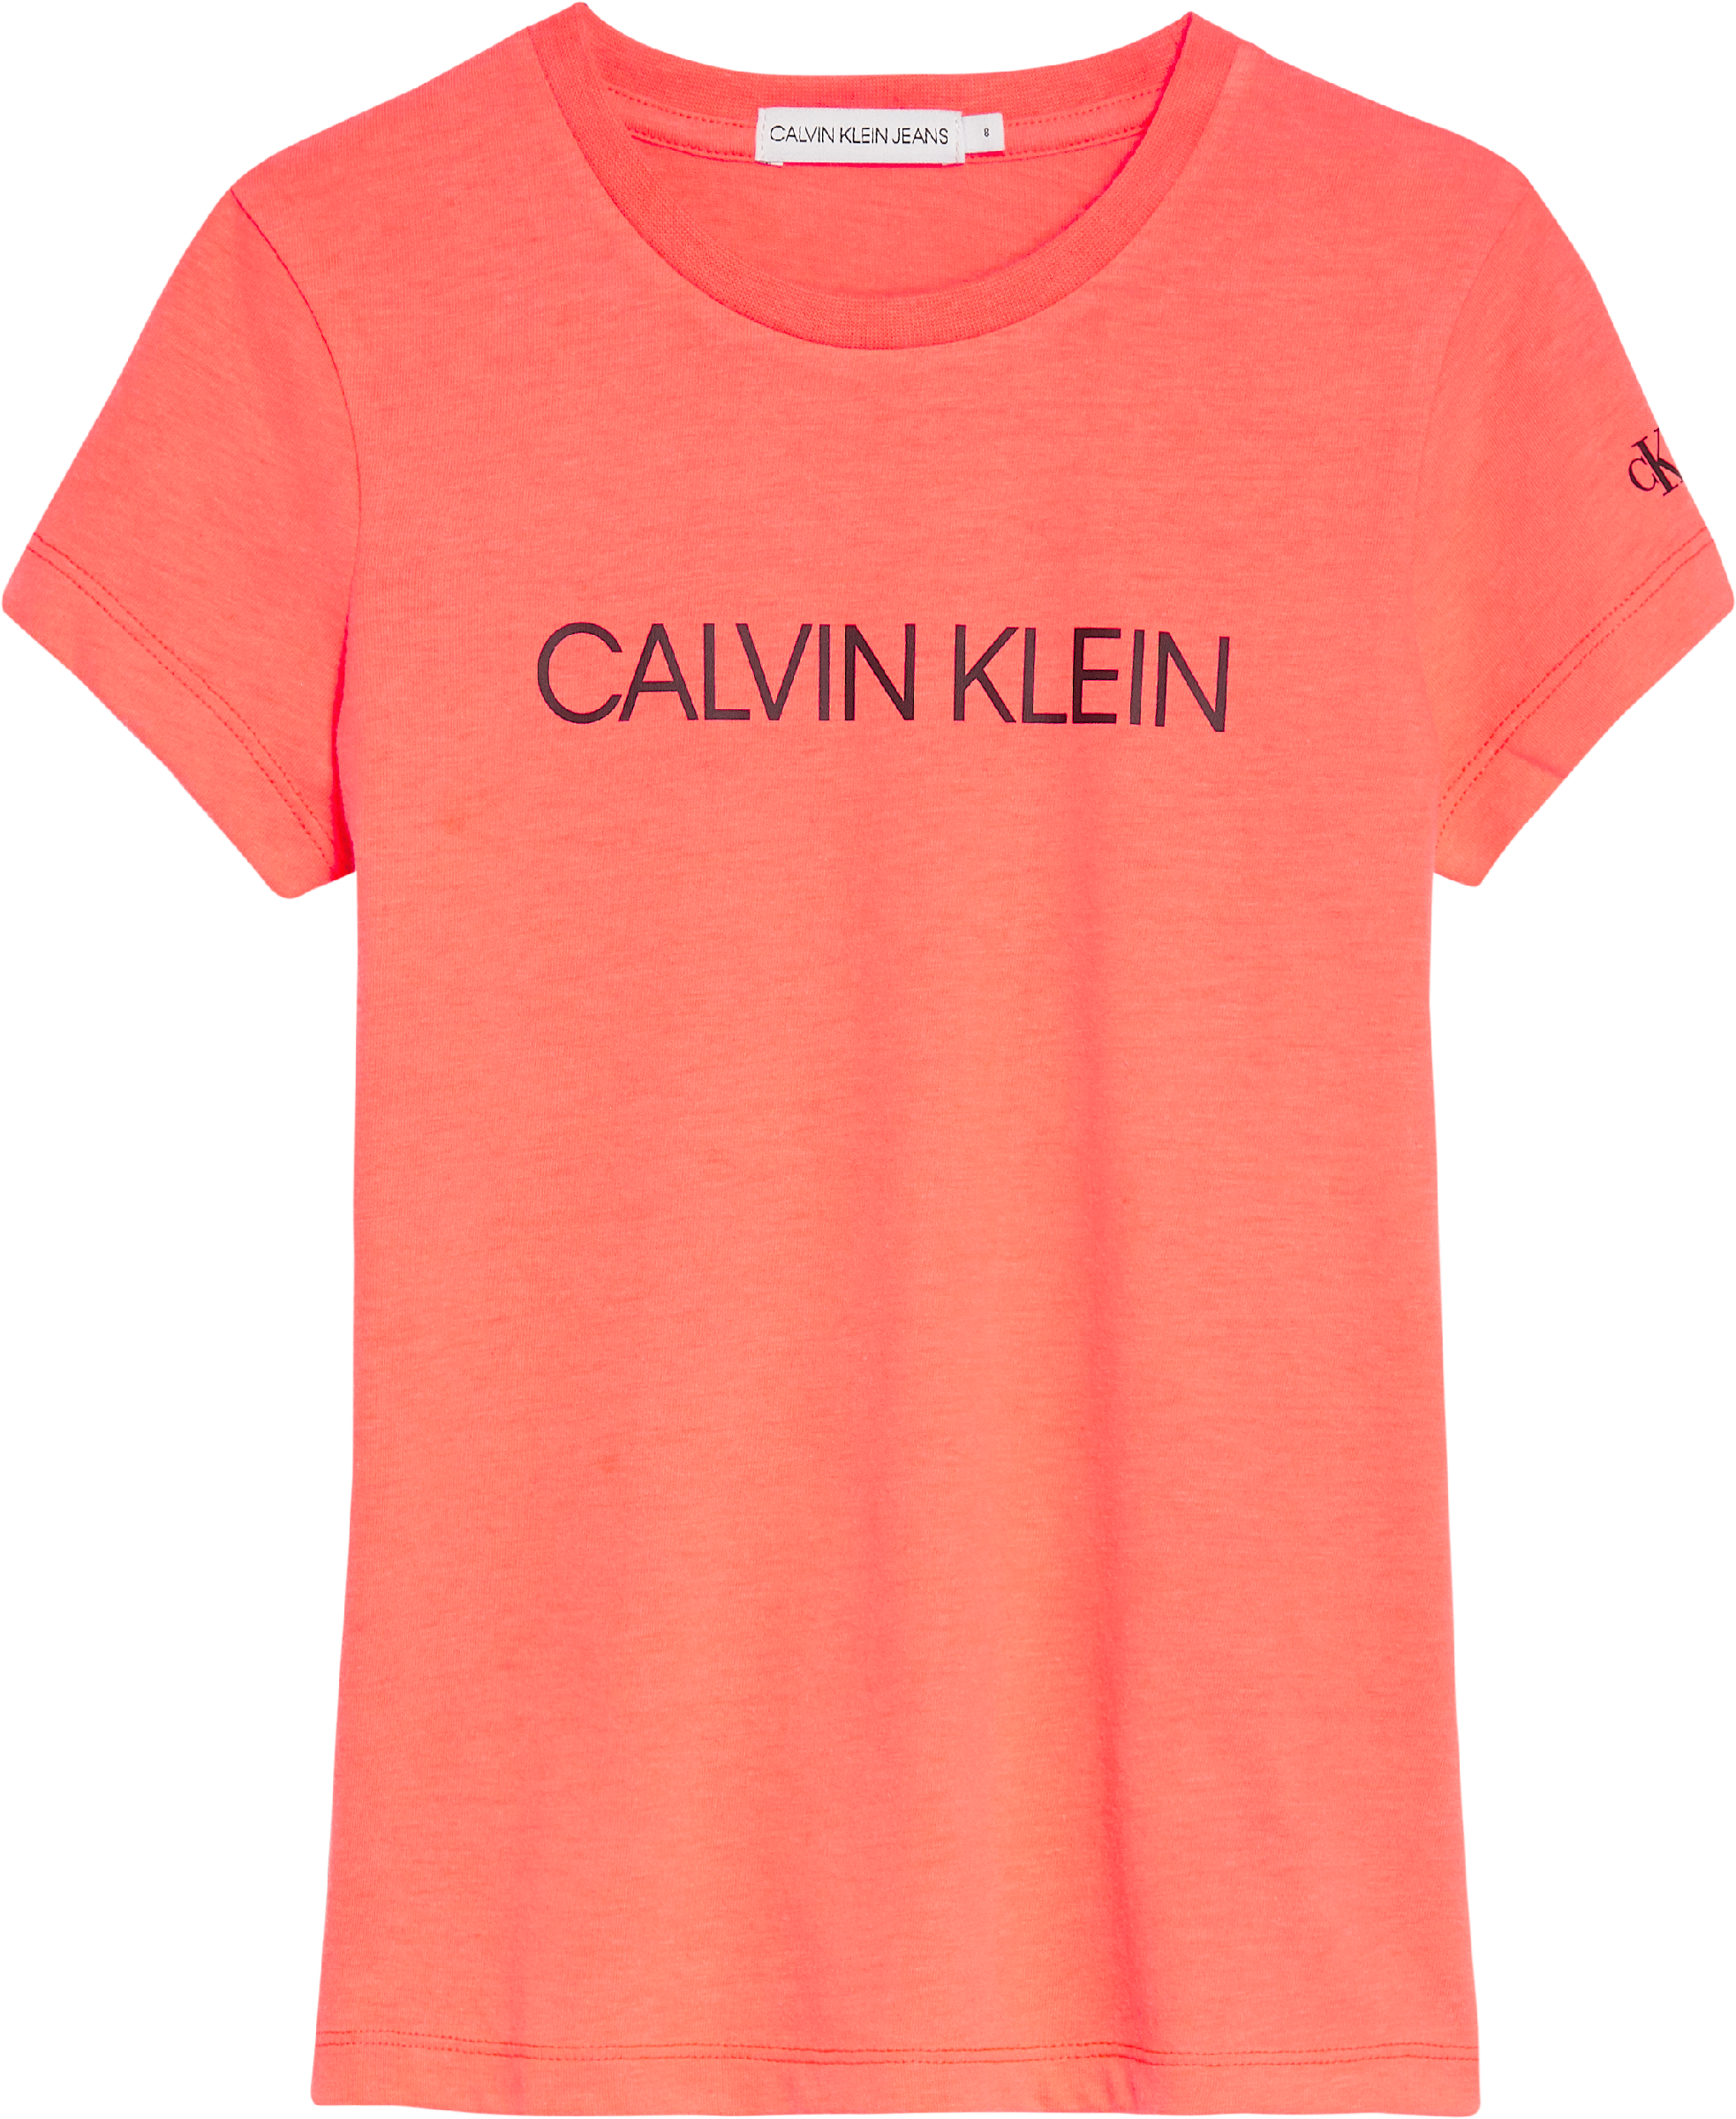 Meisjes INSTITUTIONAL SLIM T van Calvin Klein in de kleur Roze in maat 176.